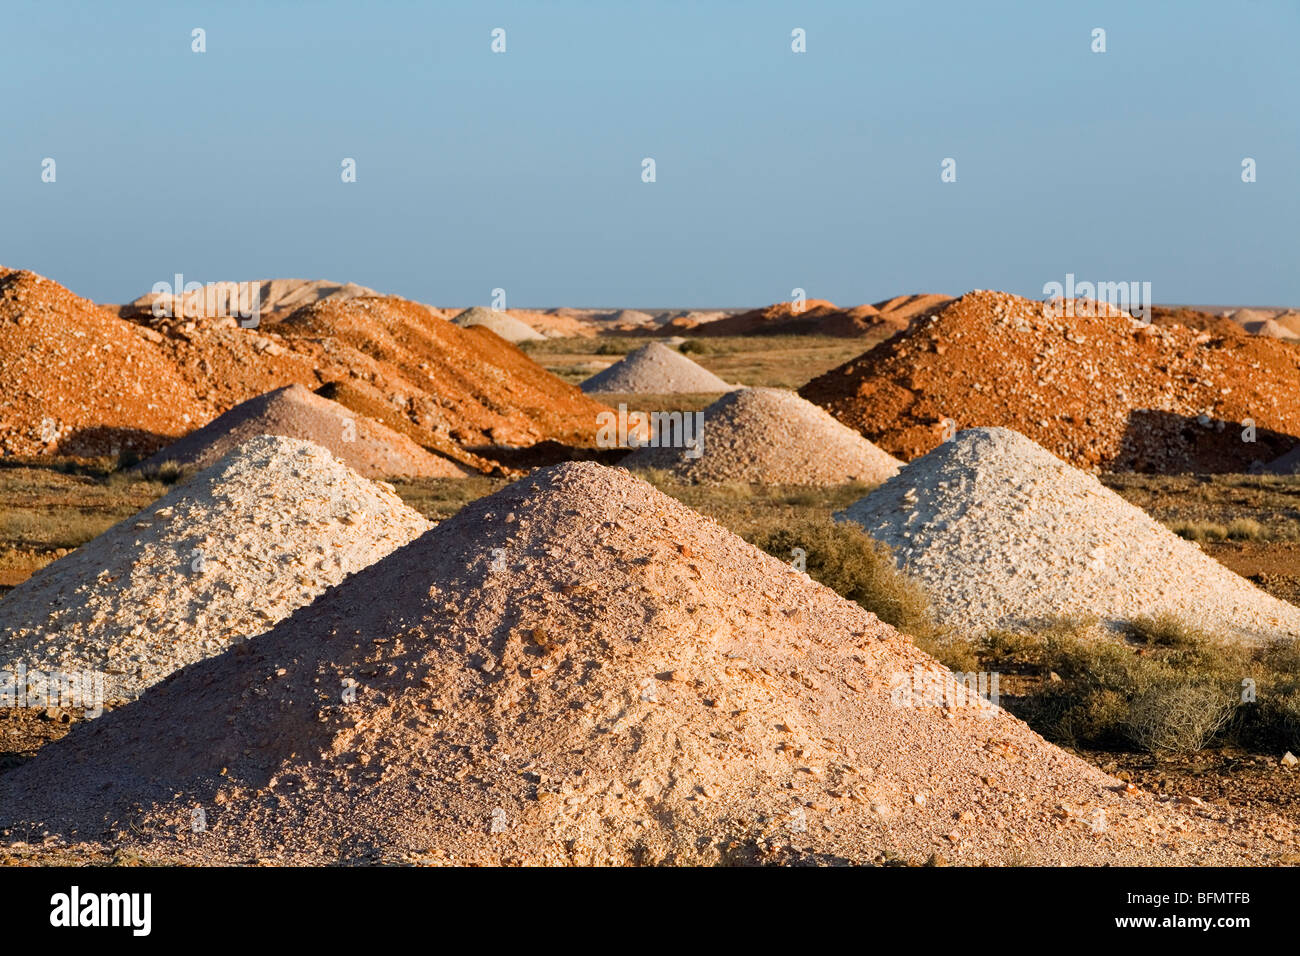 Australien, South Australia Coober Pedy.  Haufen von Erde aus vielen Minen-Wellen im Bereich Coober Pedy Opale gegraben. Stockfoto